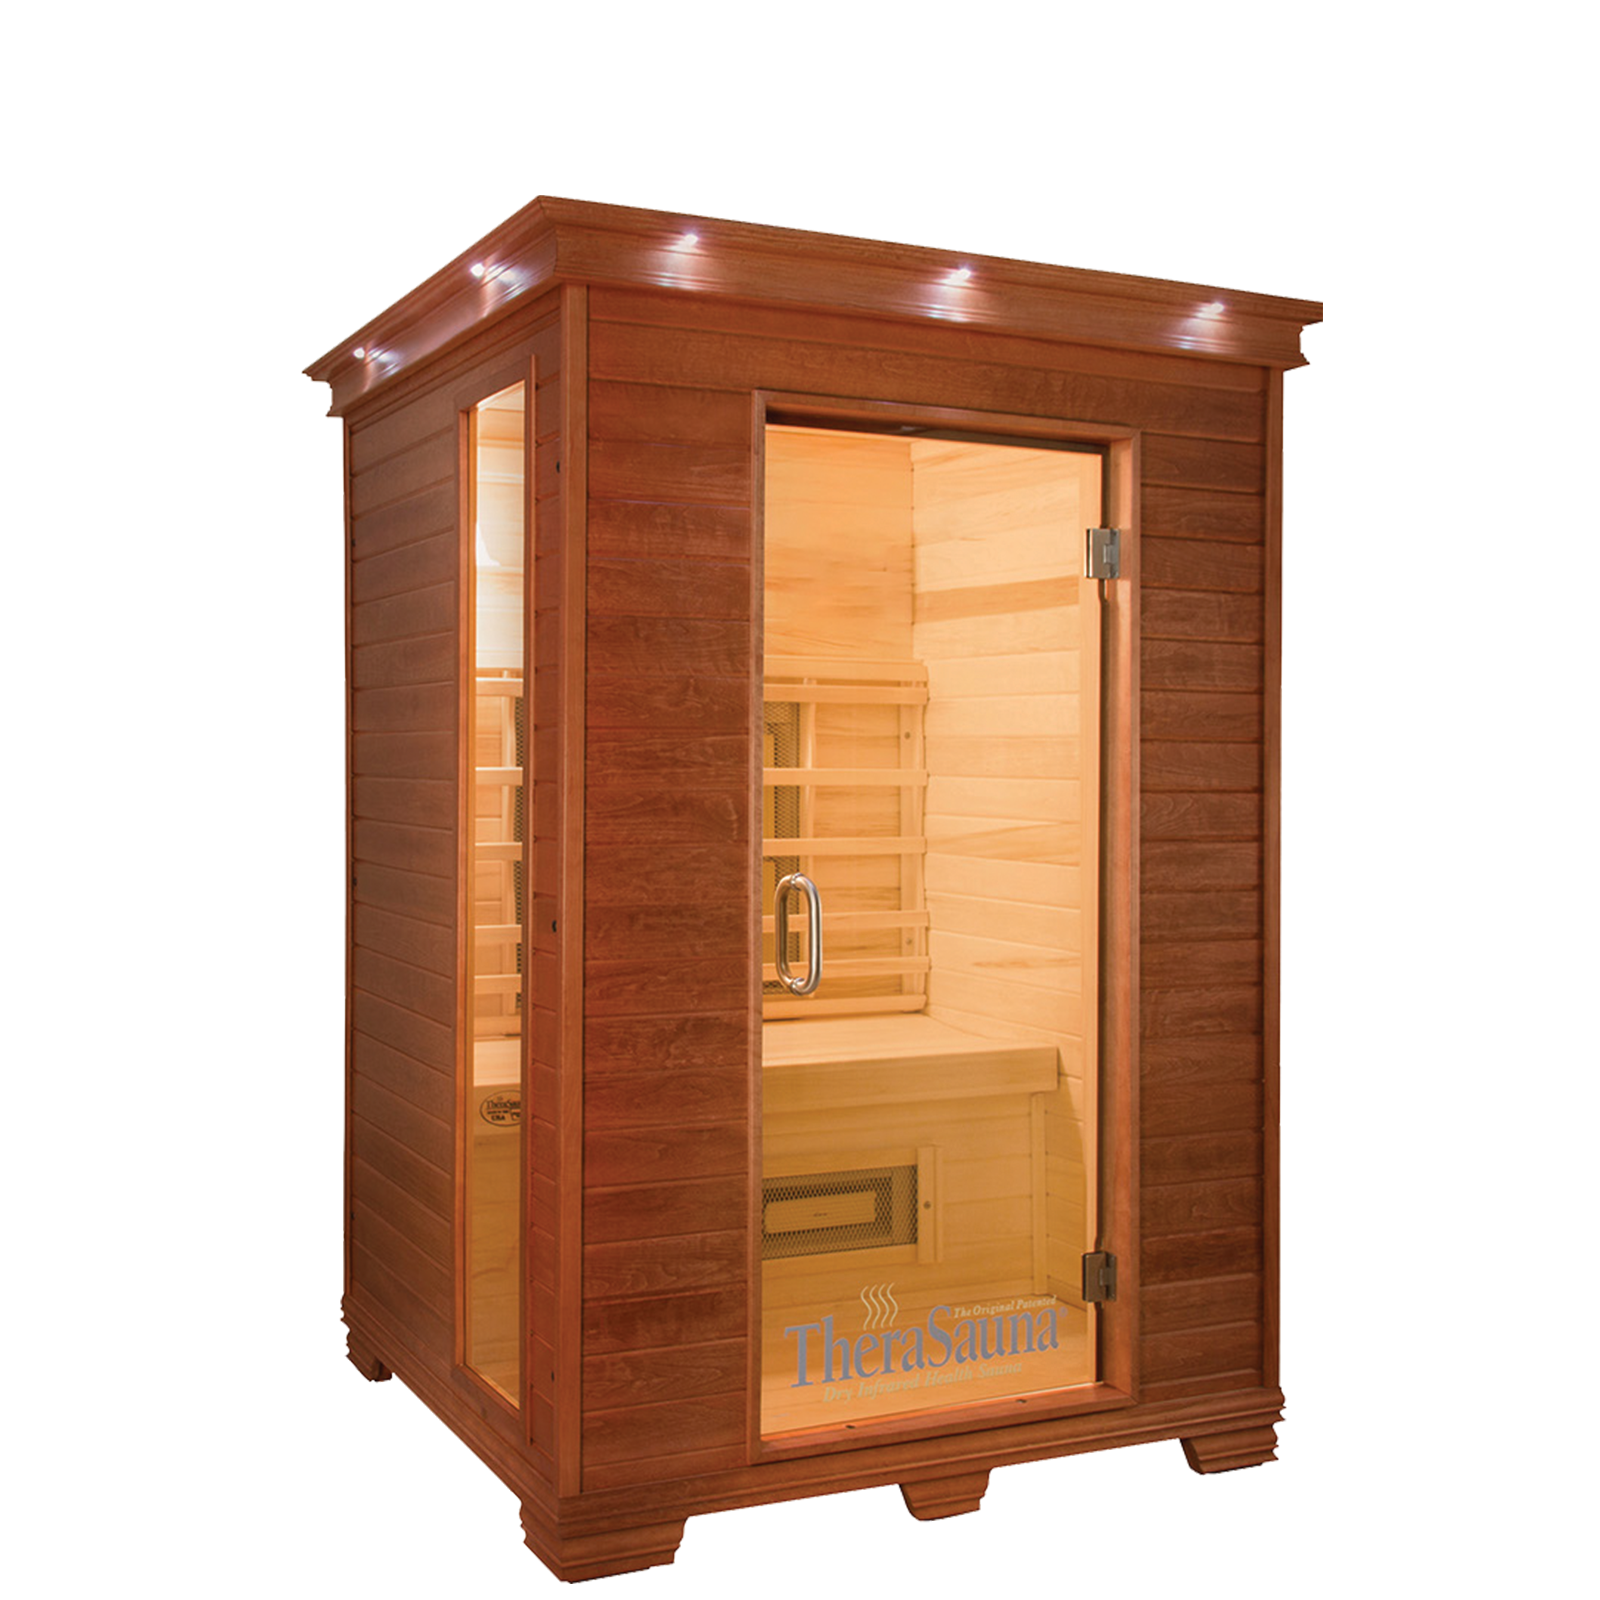 therasauna sauna booth